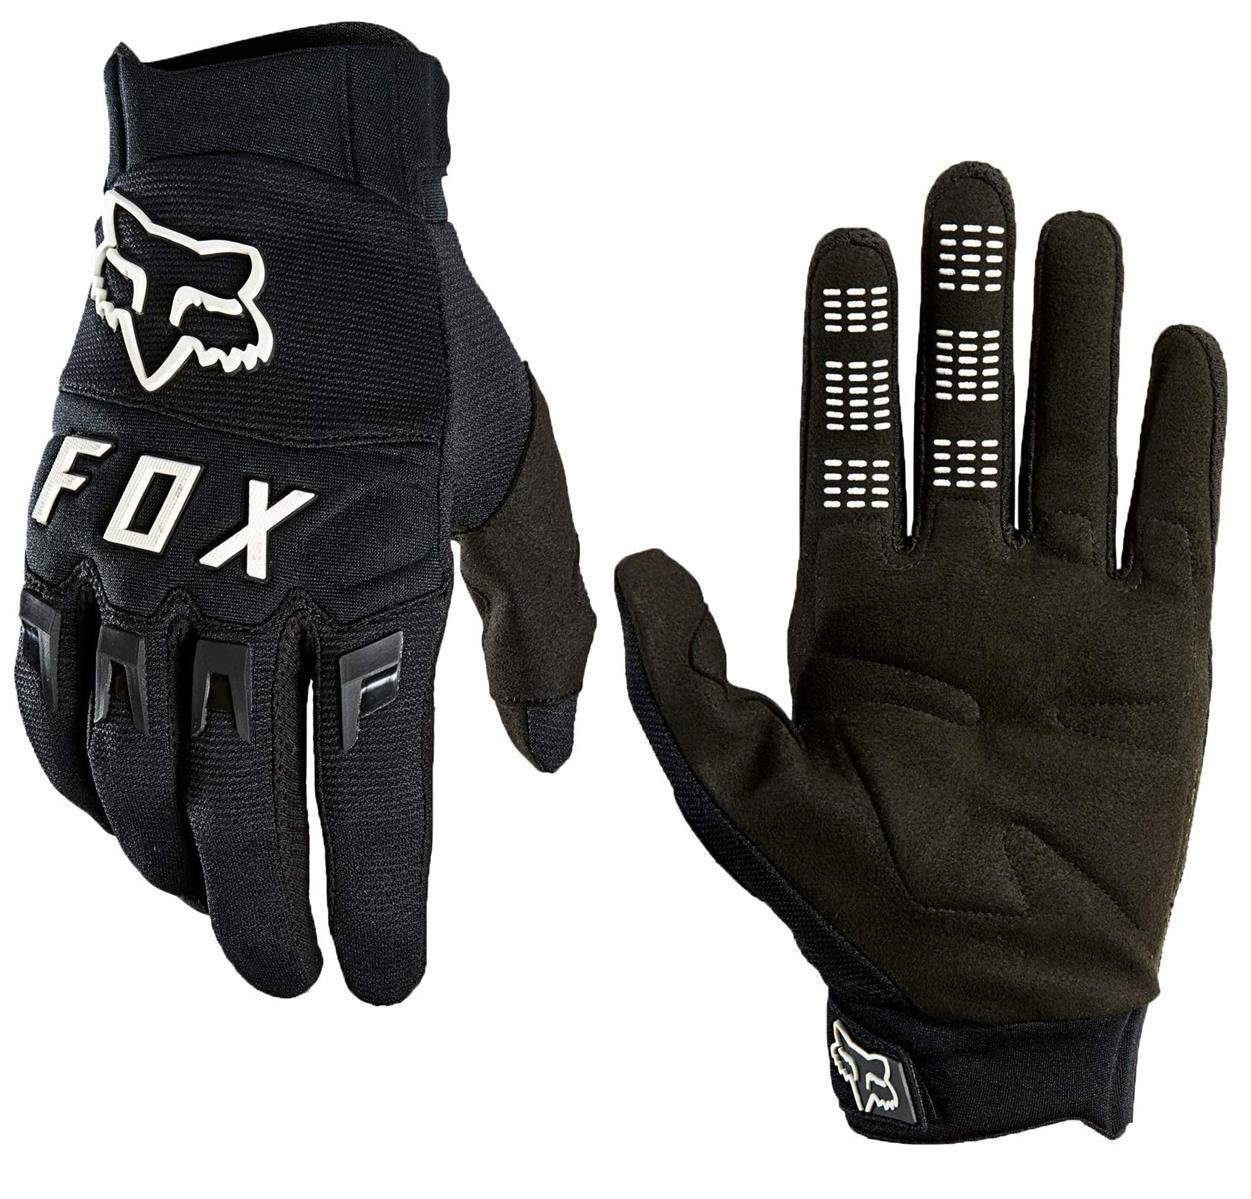 Glove Racing Motorradhandschuhe XL Handschuhe Fox Schwarz/Weiss schwarz Logo weiß / Dirtpaw Fox